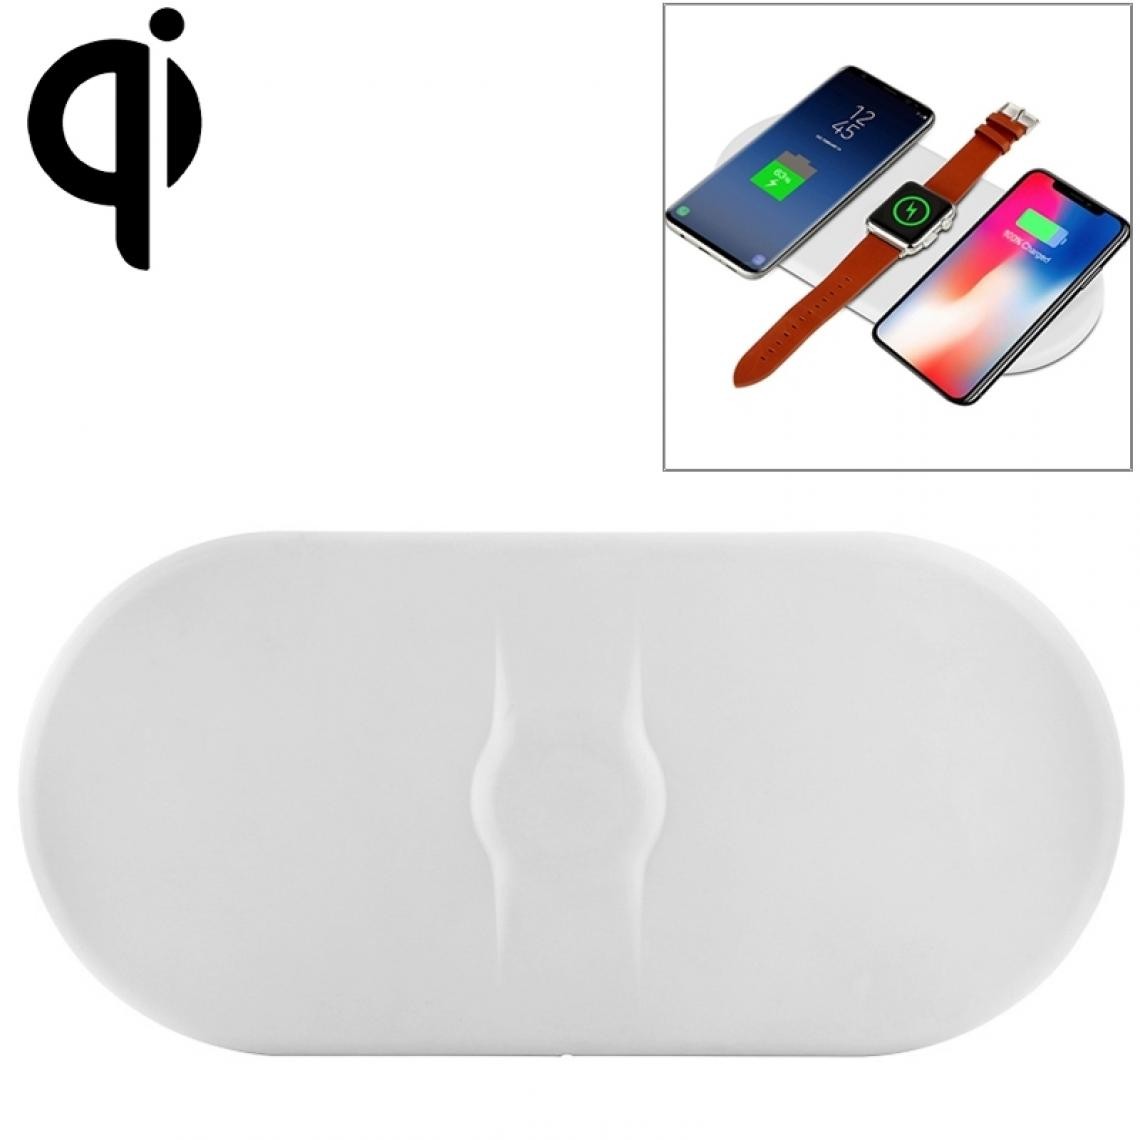 Wewoo - Chargeur sans fil Qi Standard 3 en 1 5W / 7,5W / 10W, pour iPhone, Galaxy, Xiaomi, Google, LG, Apple Watch et autres téléphones intelligents (Blanc) - Chargeur secteur téléphone